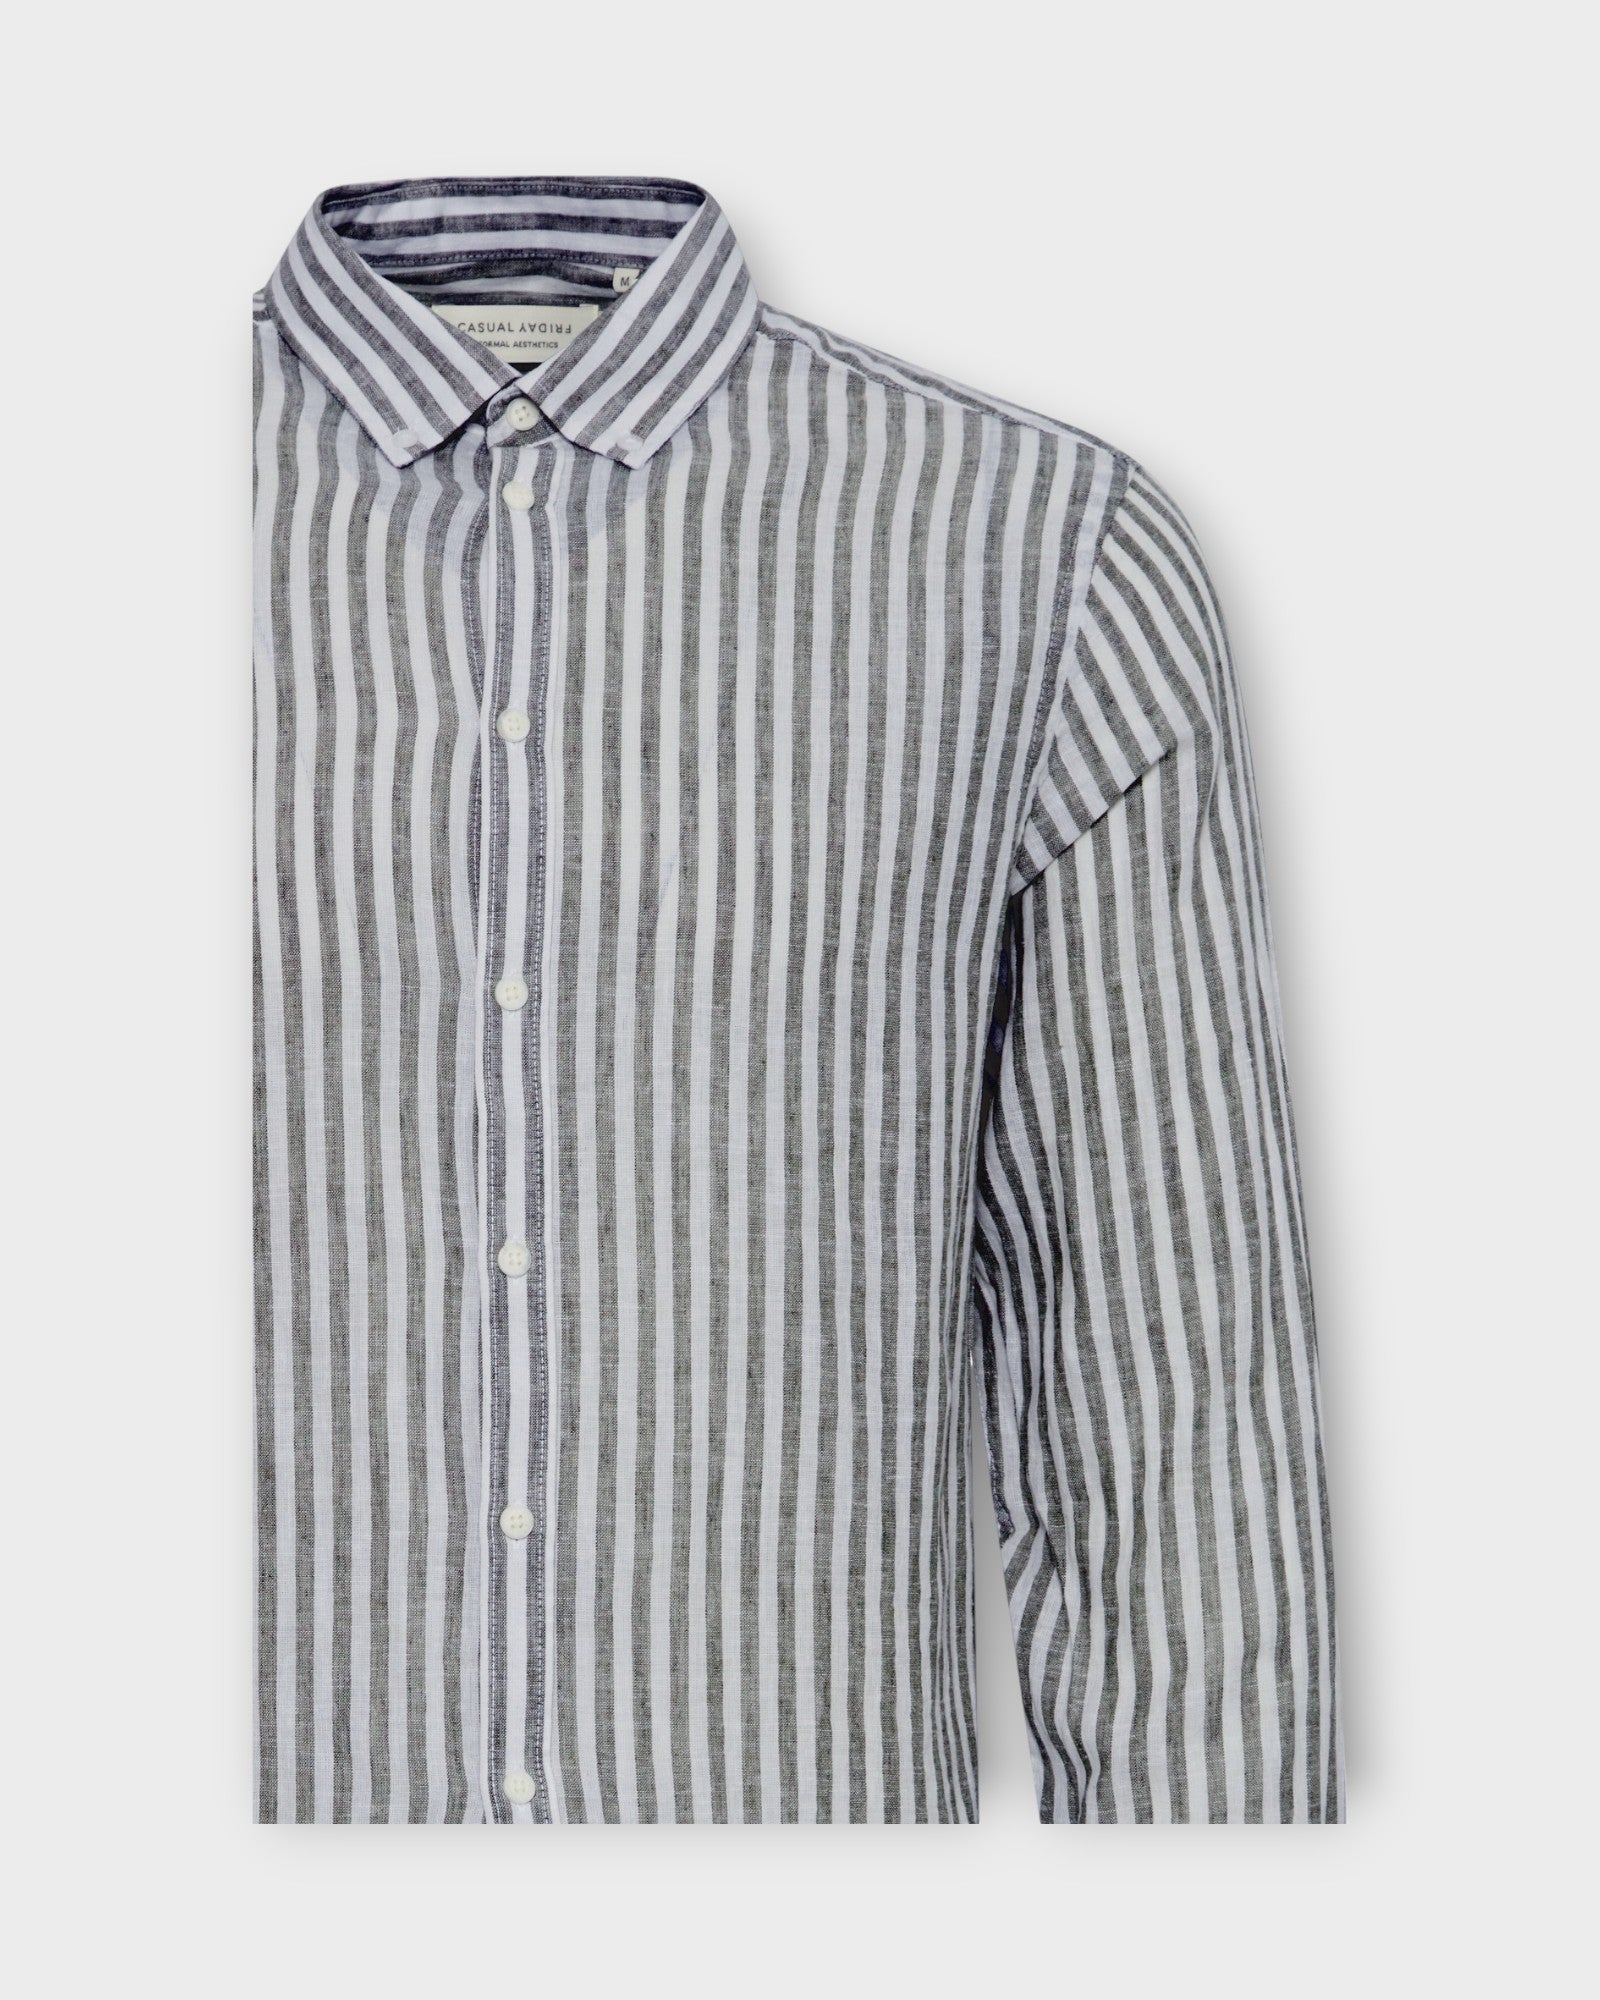 Anton Striped Linen Mix Shirt Dark Navy fra Casual Friday. Blå og hvid stribet langærmet hørskjorte til mænd. Her set i closeup.